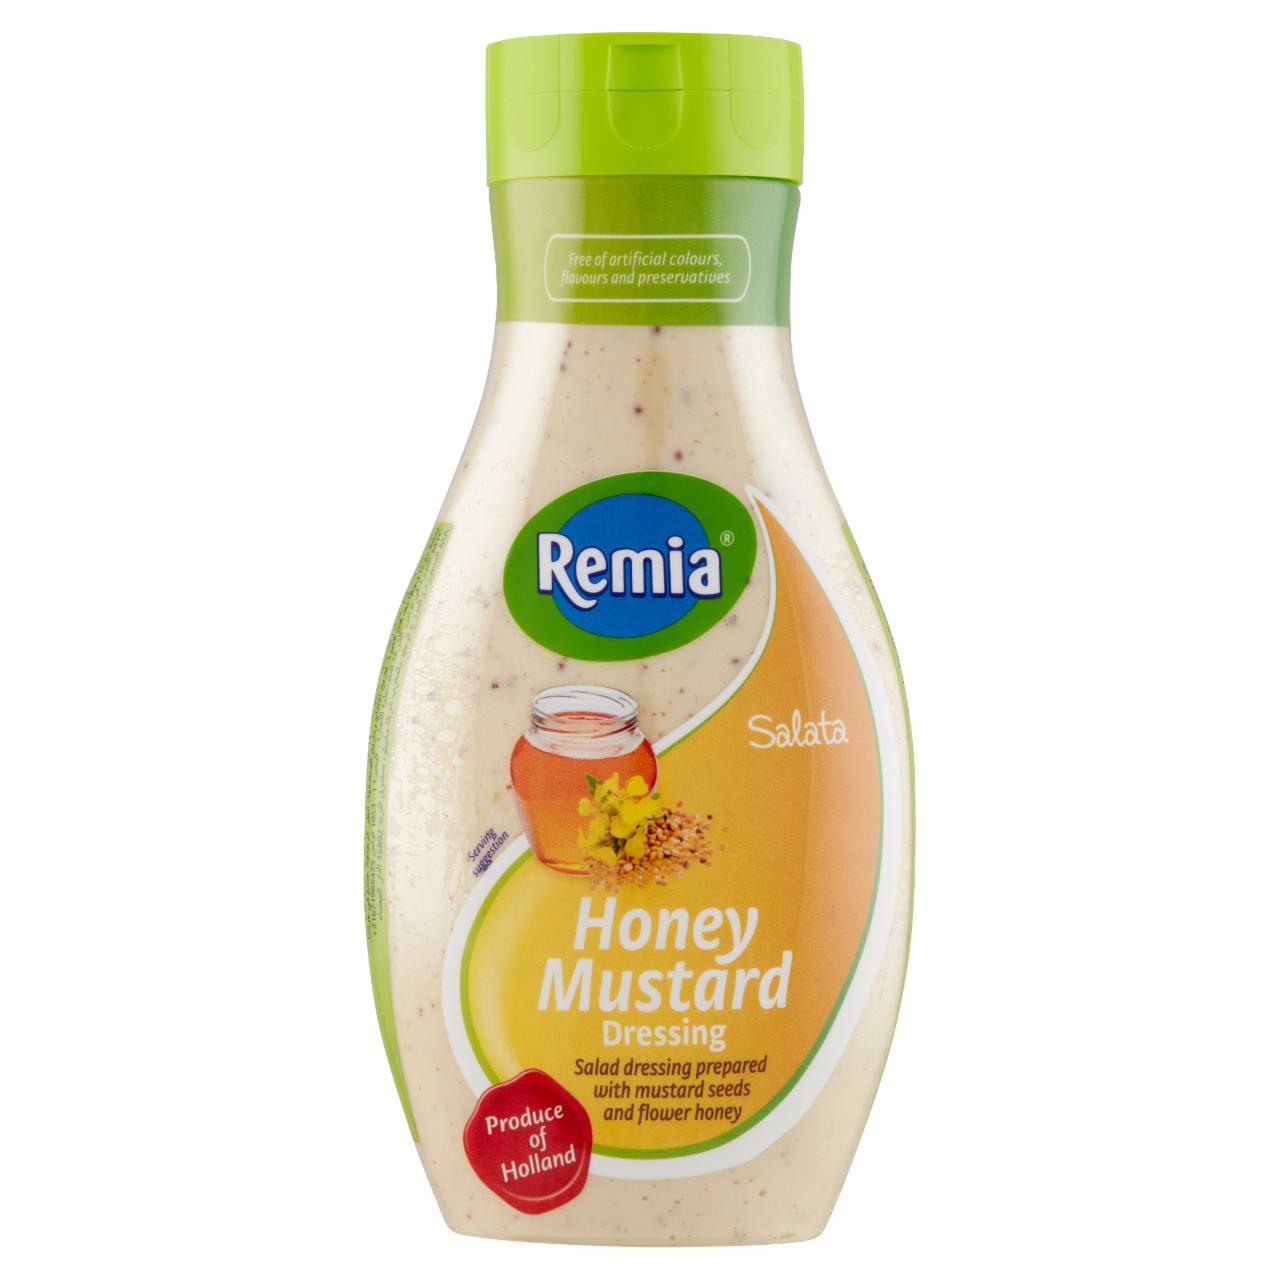 Képek - Remia mézes mustáros öntet 500 ml